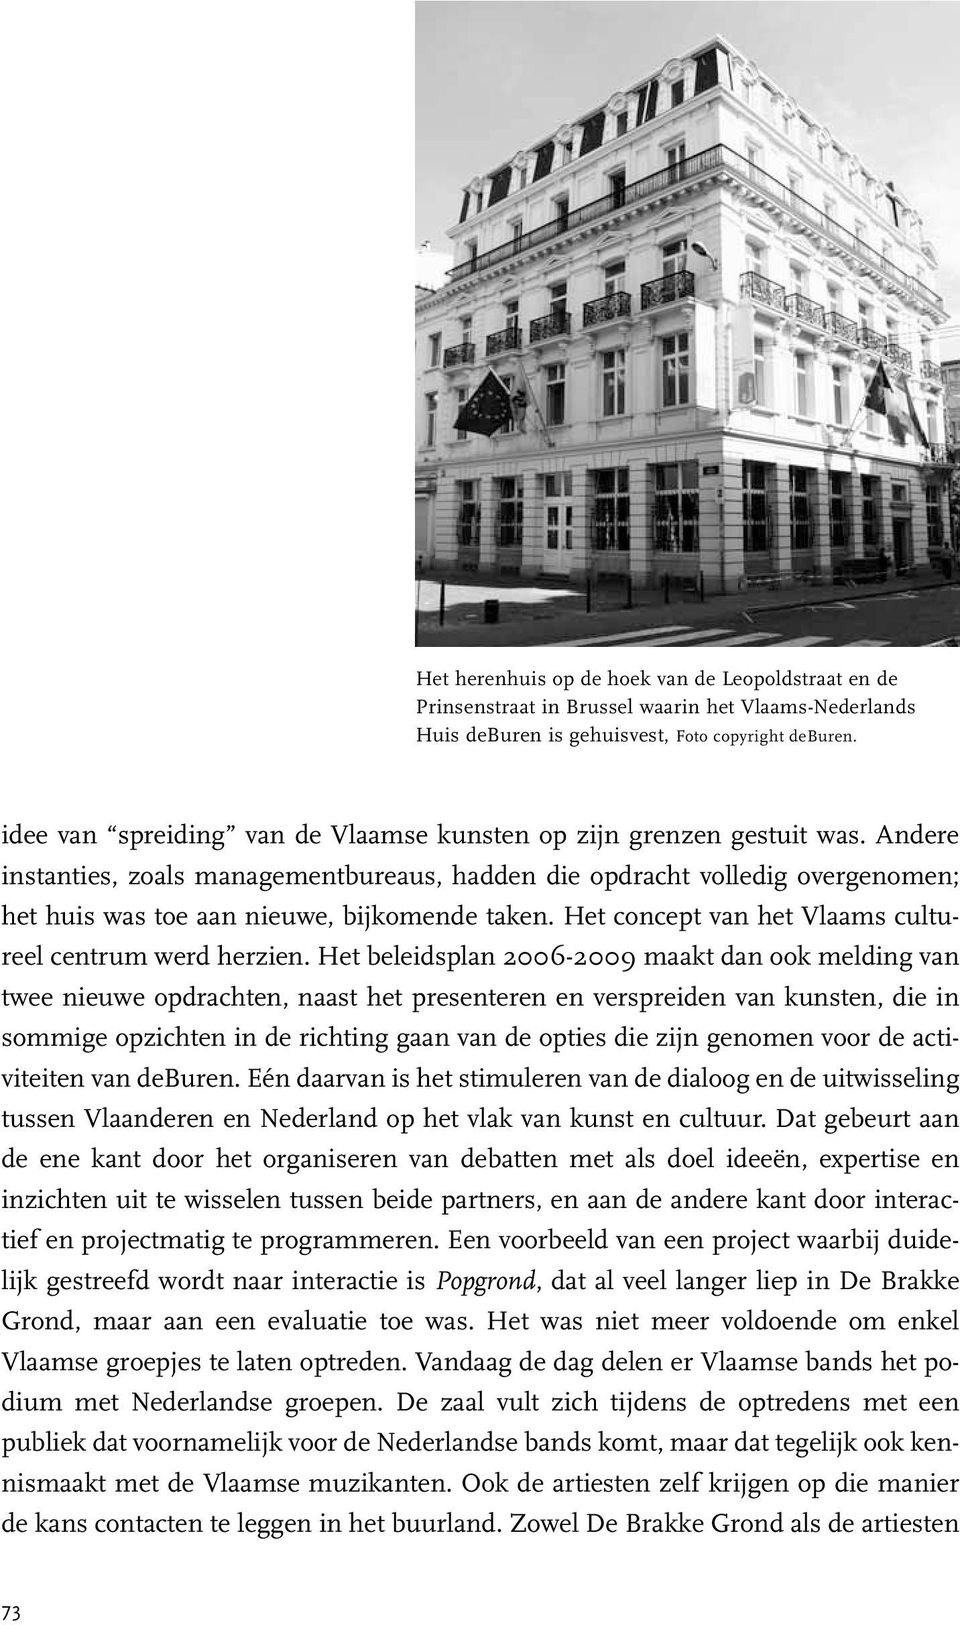 Andere instanties, zoals managementbureaus, hadden die opdracht volledig overgenomen; het huis was toe aan nieuwe, bijkomende taken. Het concept van het Vlaams cultureel centrum werd herzien.